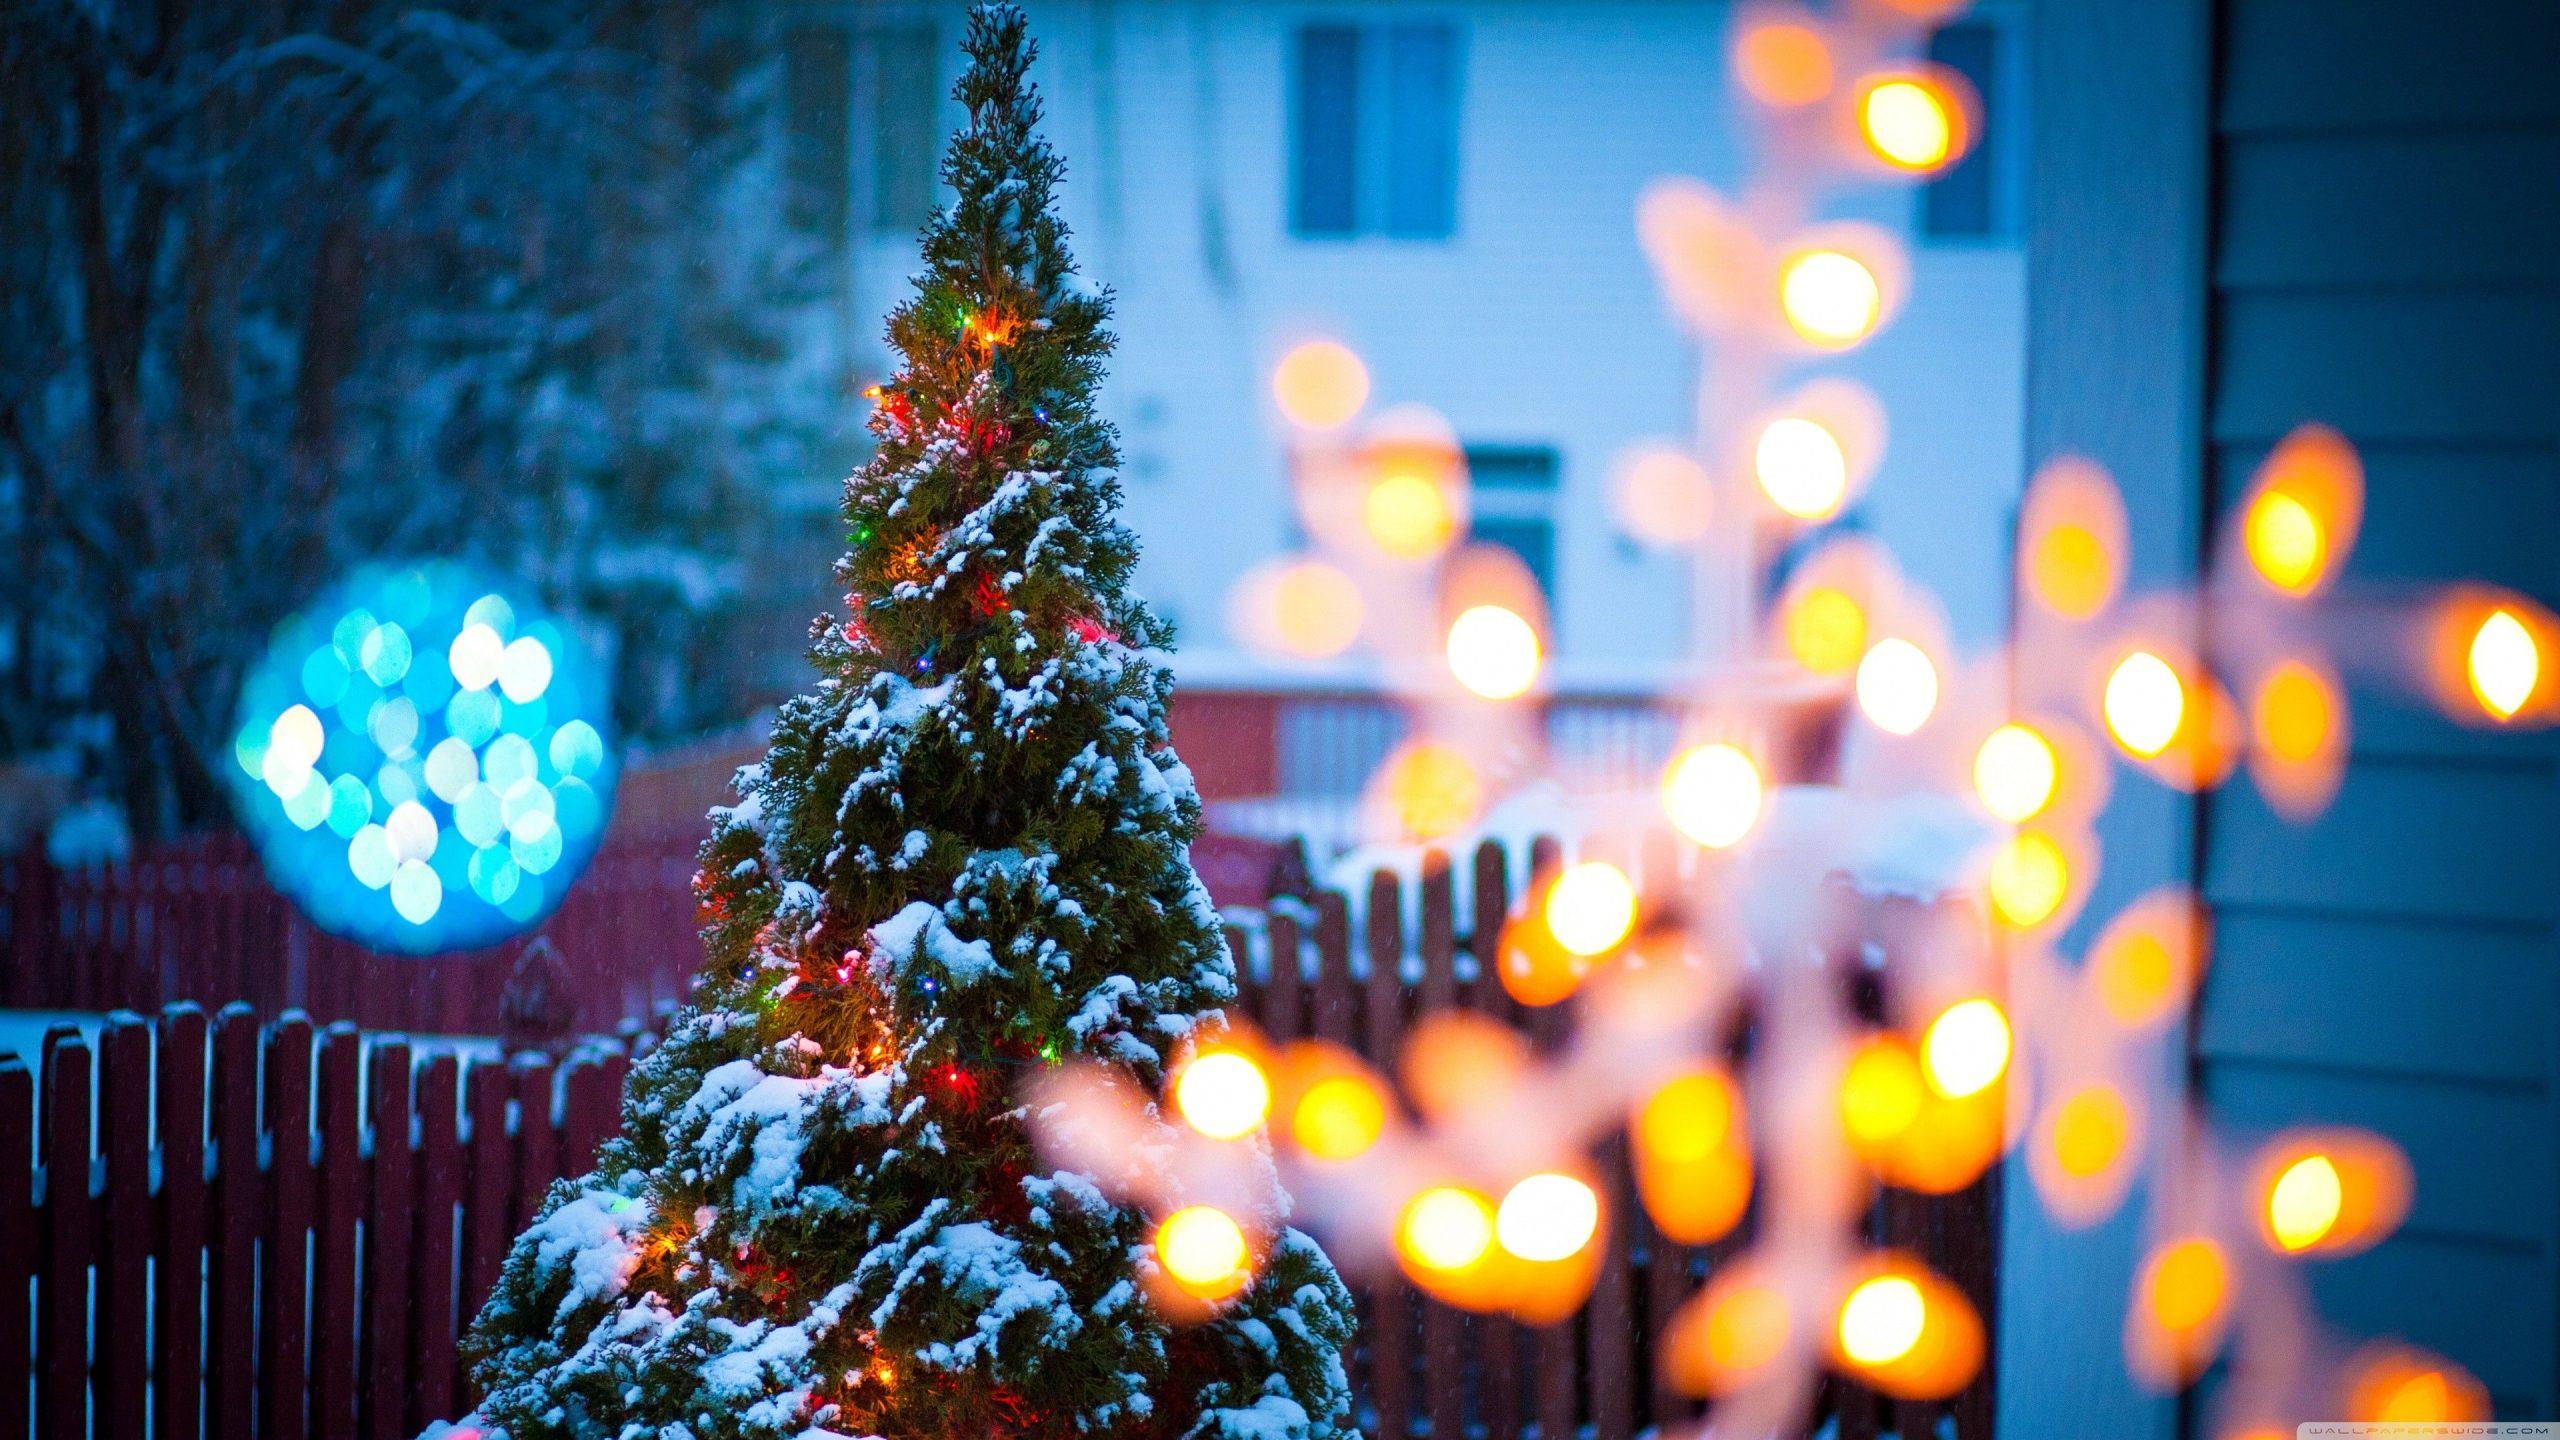 Cây thông Noel là biểu tượng của mùa Giáng Sinh. Hãy để những cây thông Noel trang trí lung linh của chúng tôi mang đến không gian ấm áp và rực rỡ cho bạn và gia đình. Khám phá ngay bộ sưu tập cây thông Noel đầy đủ về kích thước và kiểu dáng để lựa chọn cây thông Noel phù hợp nhất cho ngôi nhà của bạn!